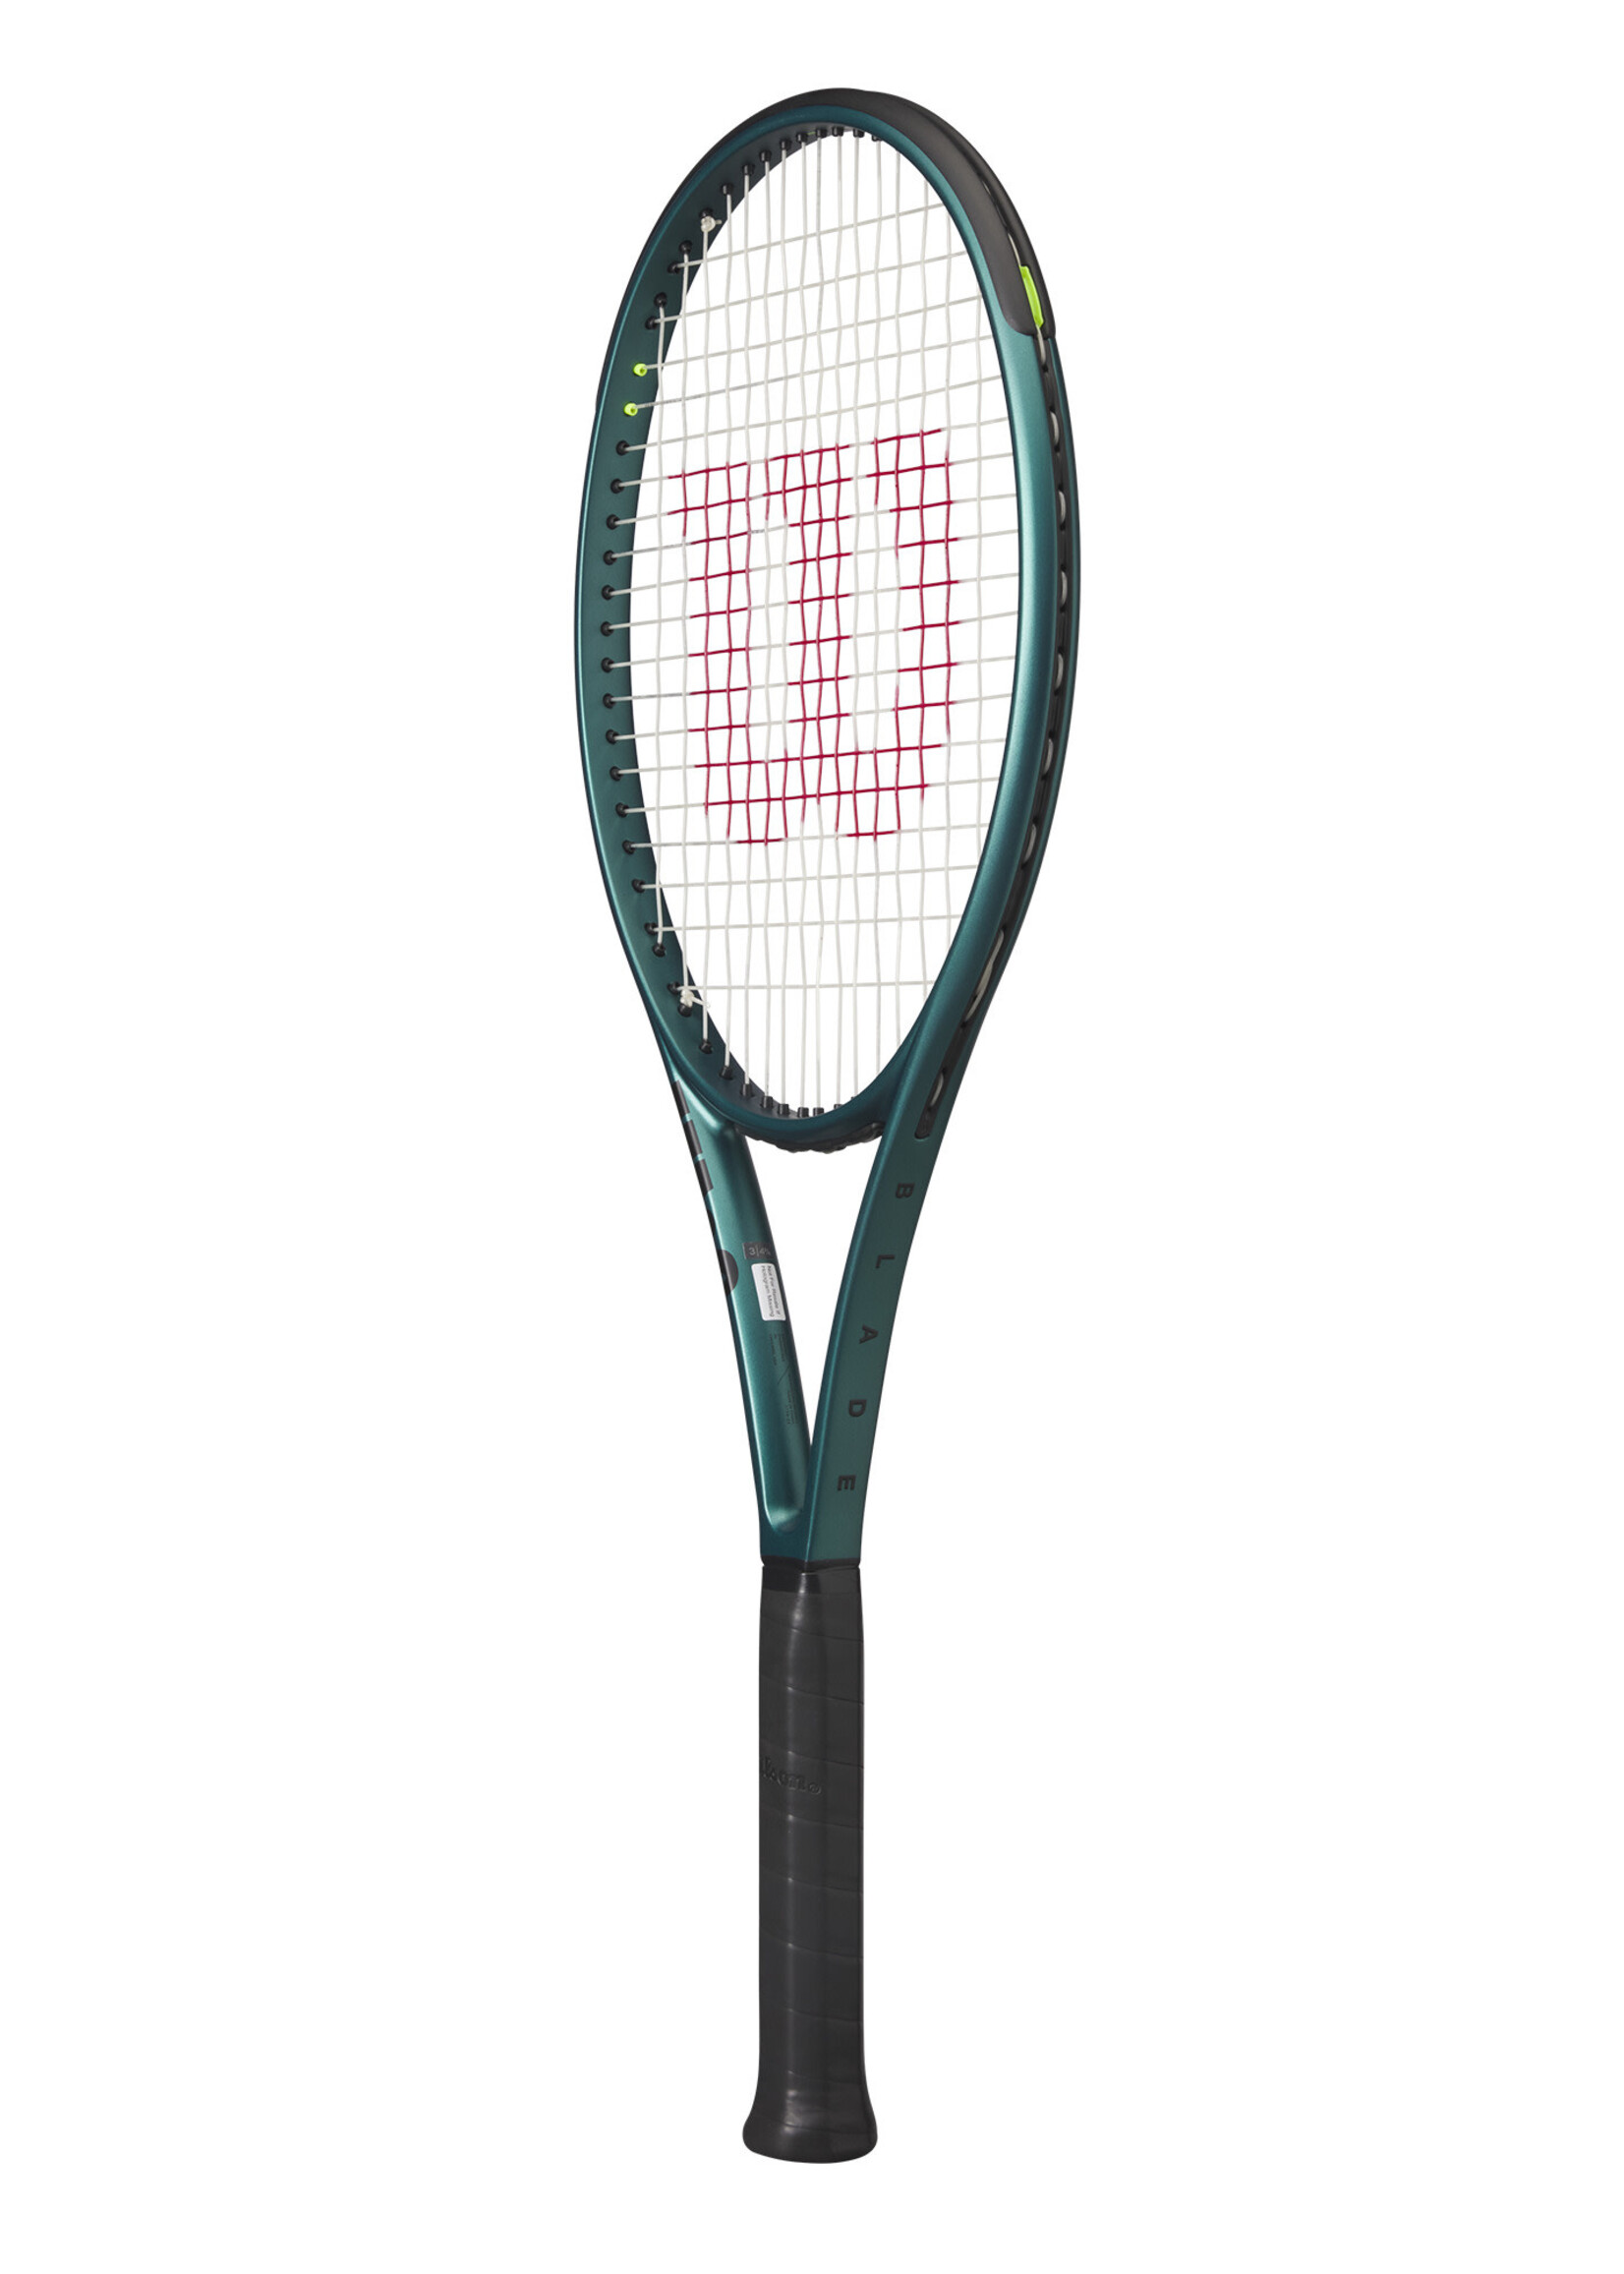 Wilson Wilson Blade 100 V9 (300g) 16x19 Tennis Racquet